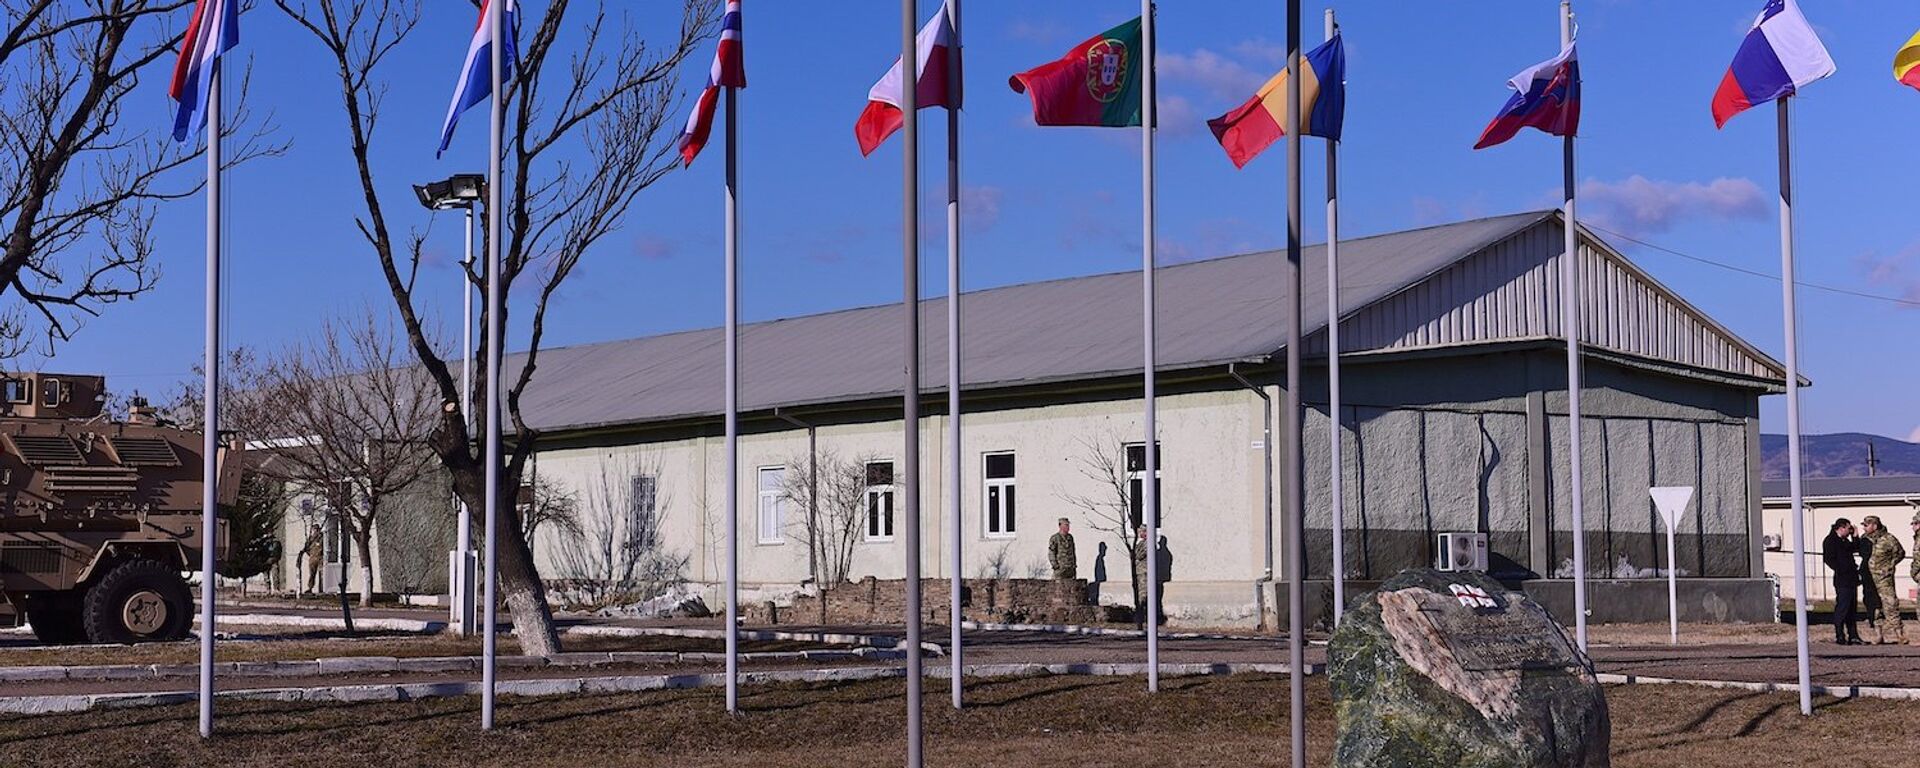 Учебный центр Грузия-НАТО на территории военной базы в Крцаниси - Sputnik Грузия, 1920, 11.06.2021